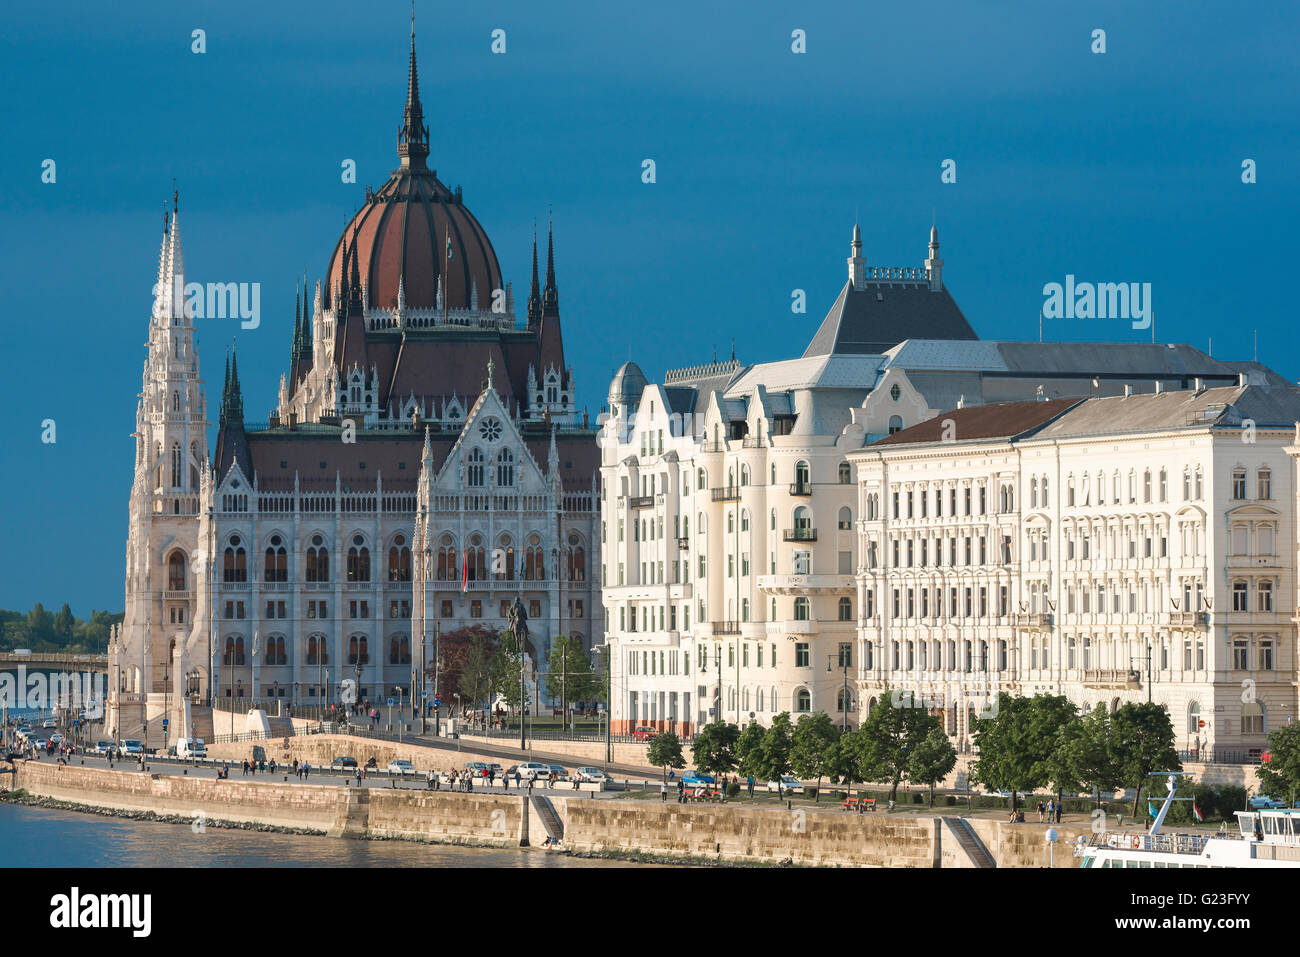 Bâtiment du Parlement de Budapest, vue sur les édifices du Parlement au coucher du soleil dans la zone Lipotvaros de la ville, la Hongrie. Banque D'Images